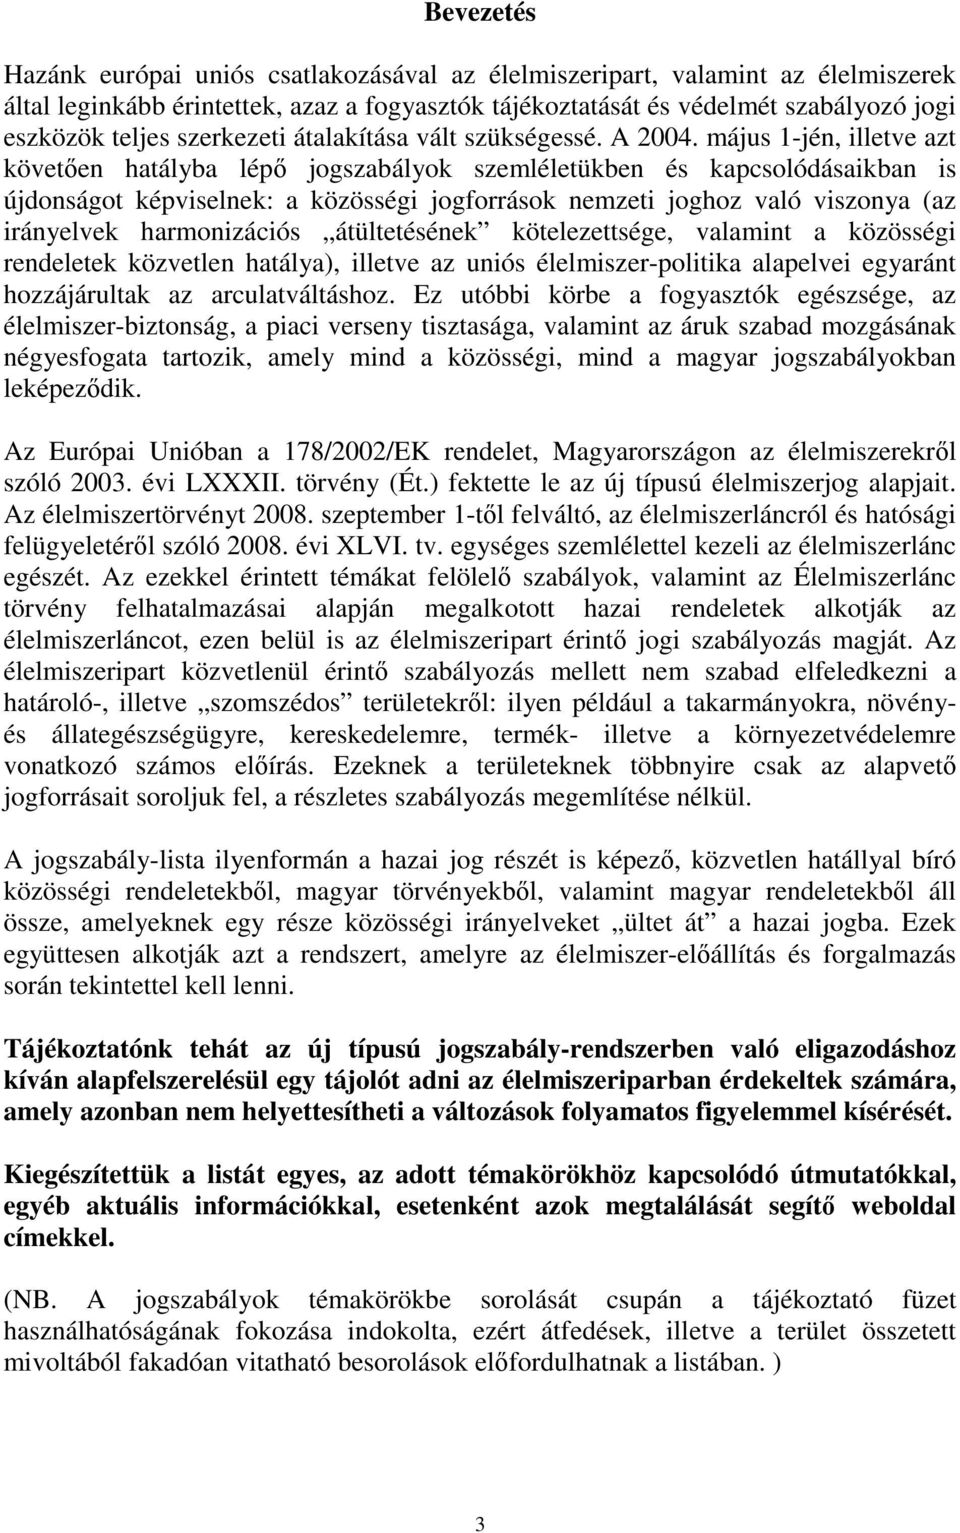 május 1-jén, illetve azt követıen hatályba lépı jogszabályok szemléletükben és kapcsolódásaikban is újdonságot képviselnek: a közösségi jogforrások nemzeti joghoz való viszonya (az irányelvek